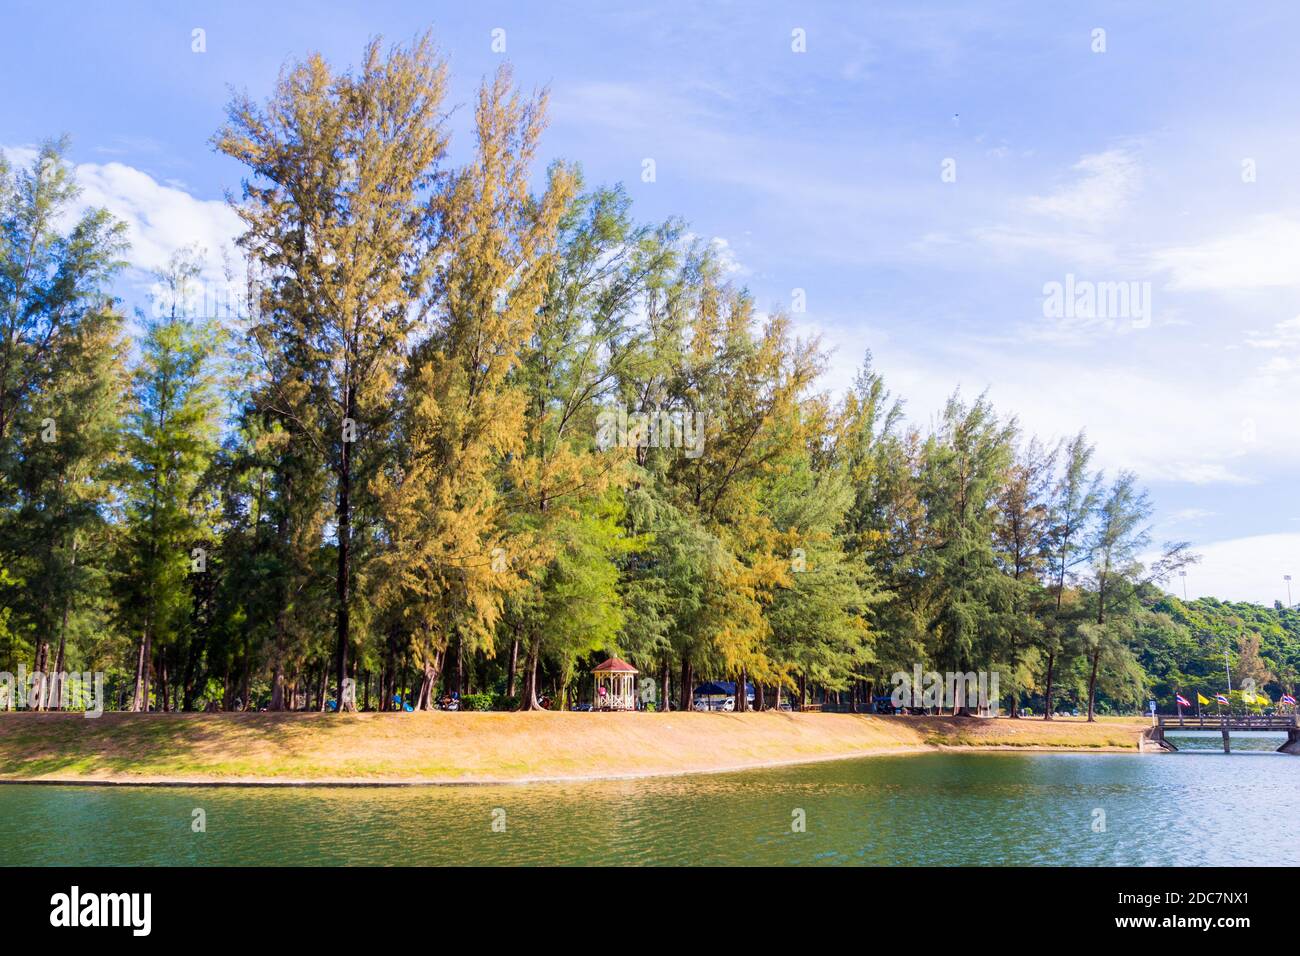 A grove of Casuarina trees in Phuket, Thailand Stock Photo